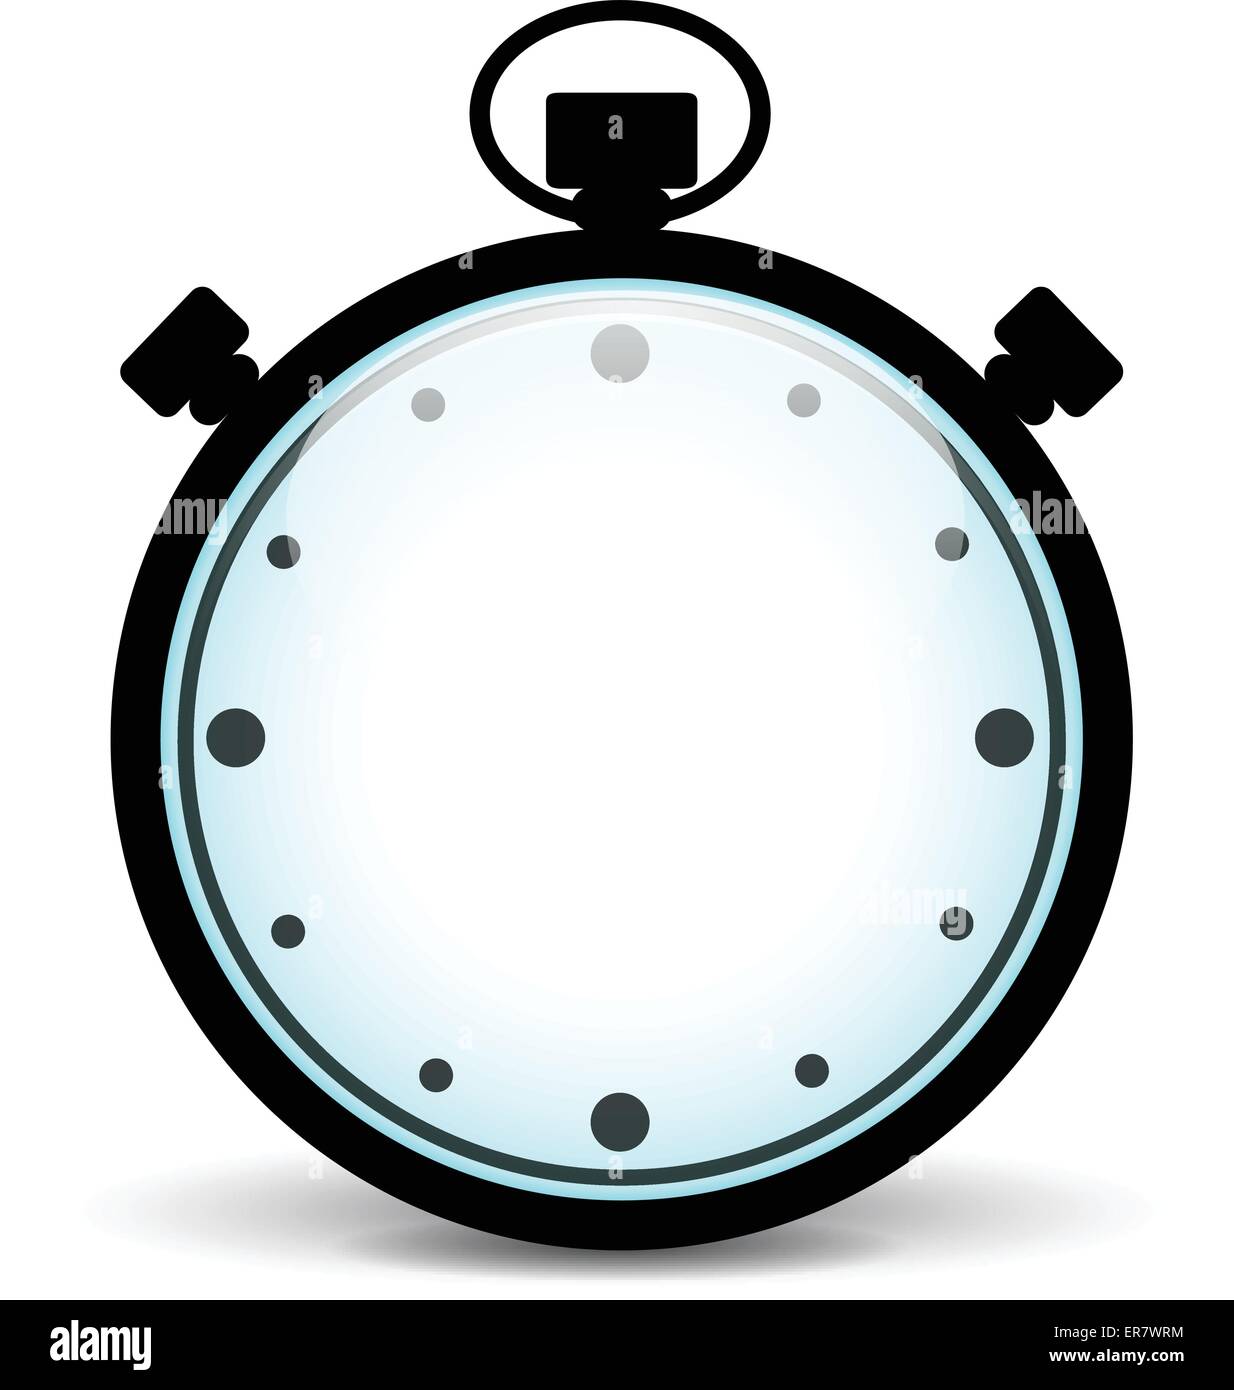 Illustrazione Vettoriale del cronometro in bianco su sfondo bianco Illustrazione Vettoriale